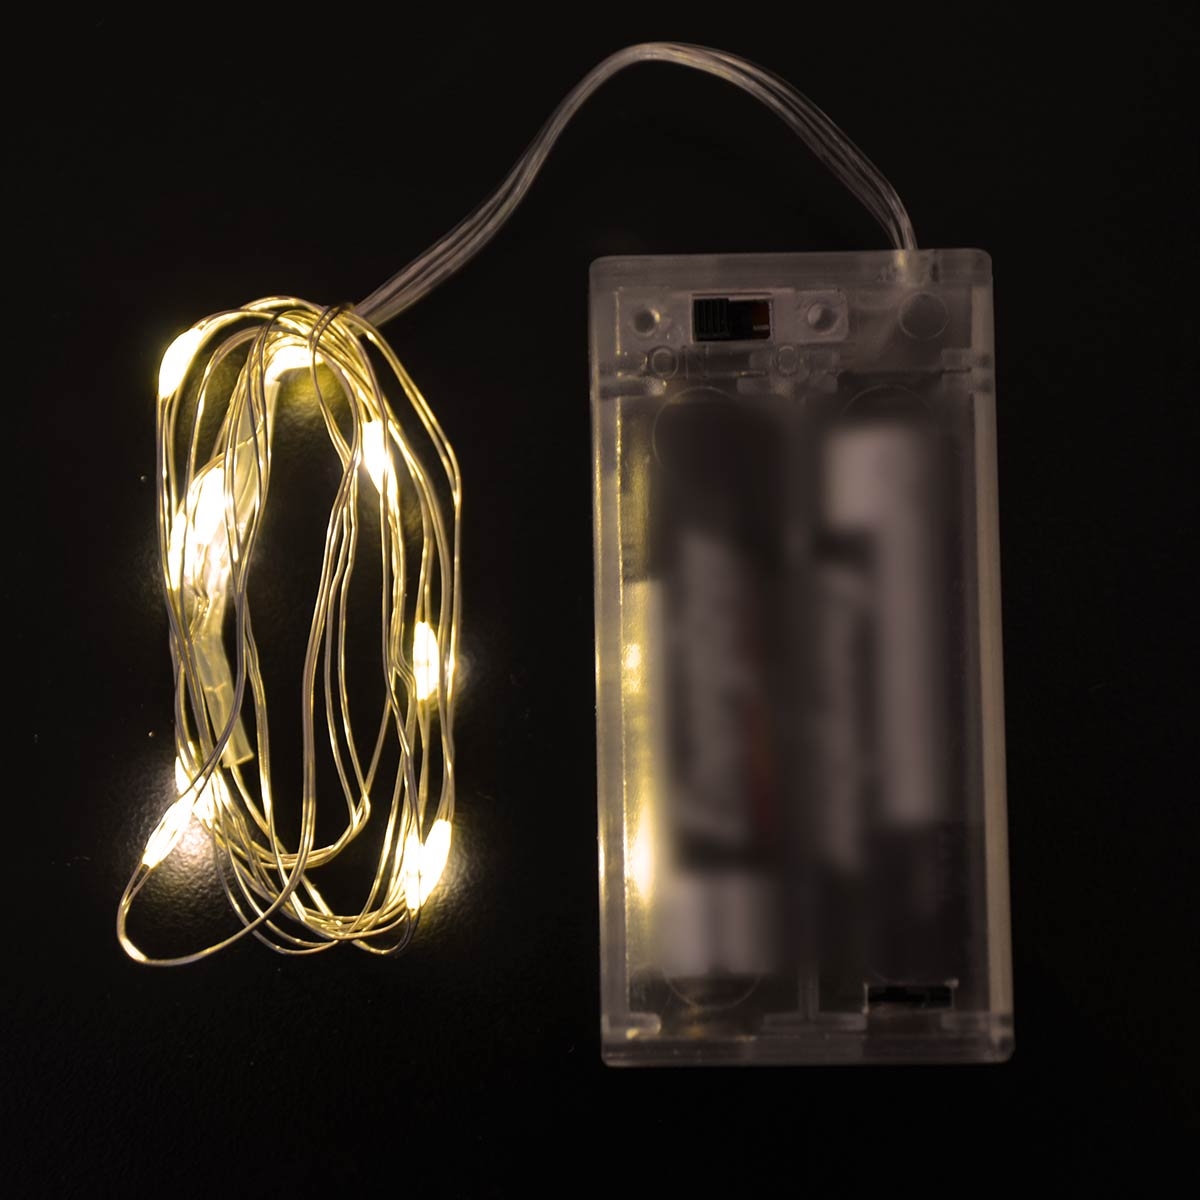 ضوء الديكور - اللون أصفر موفر للطاقة - الطول 1 متر - تعمل على البطارية 